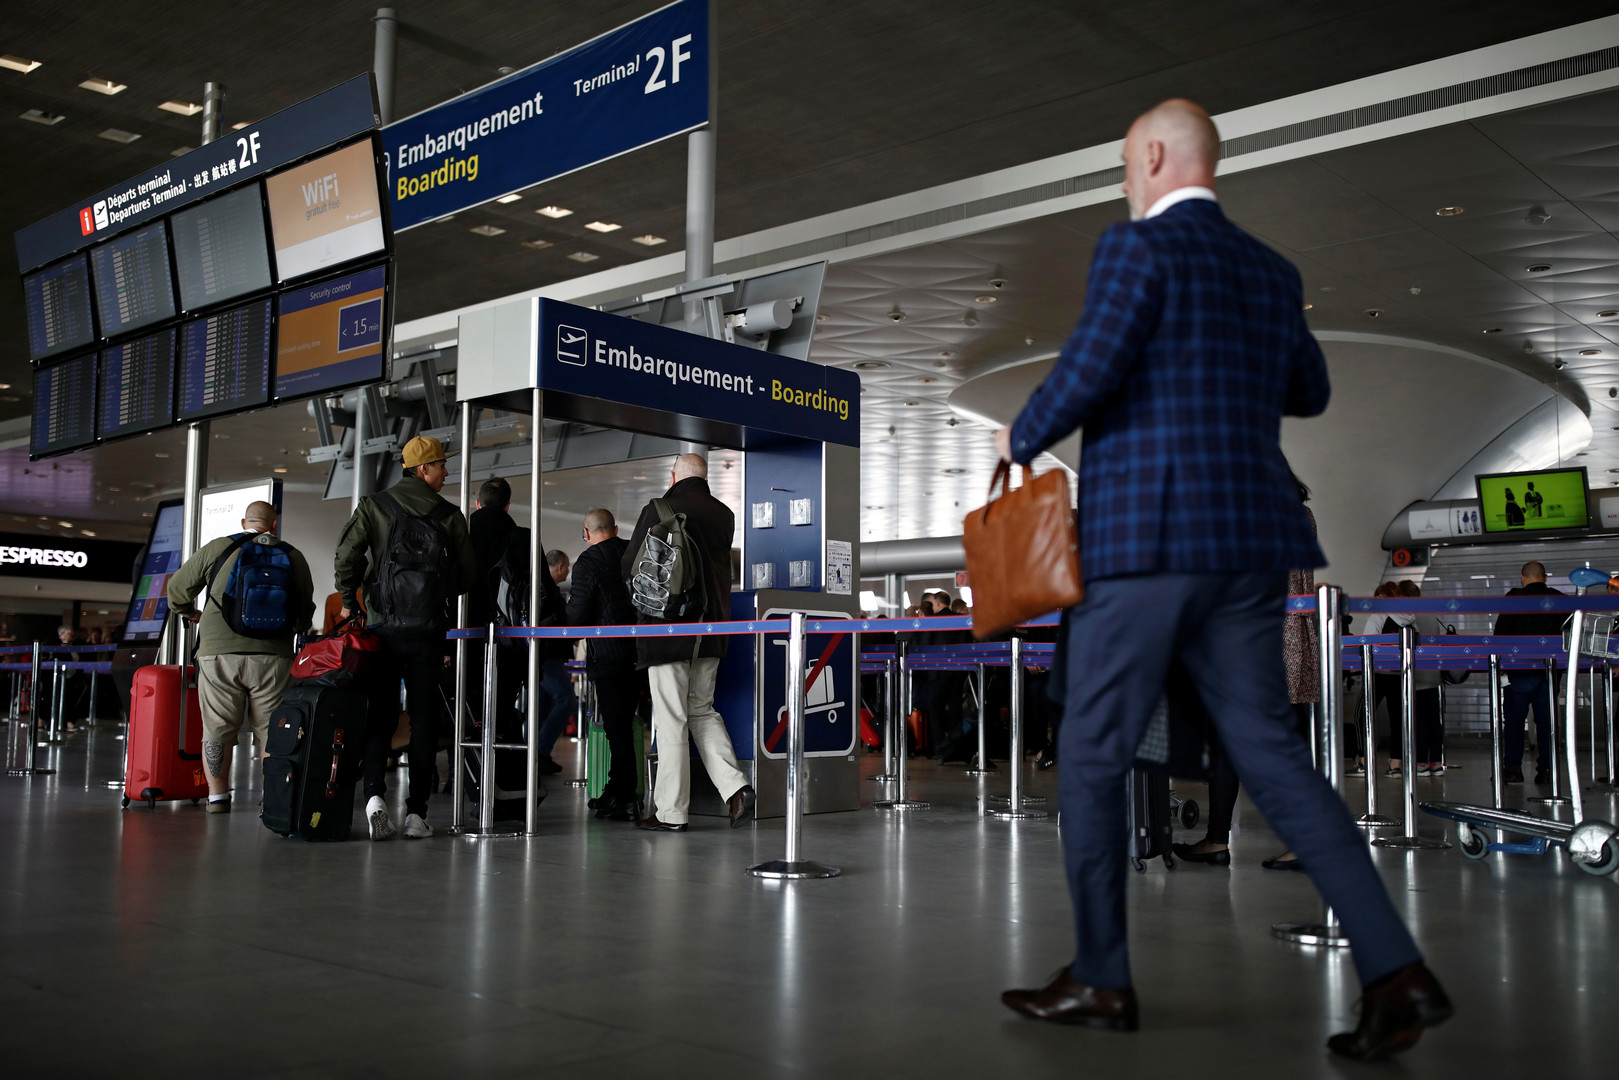 Аэропорт де голль вылет. Люди на паспортном контроле.